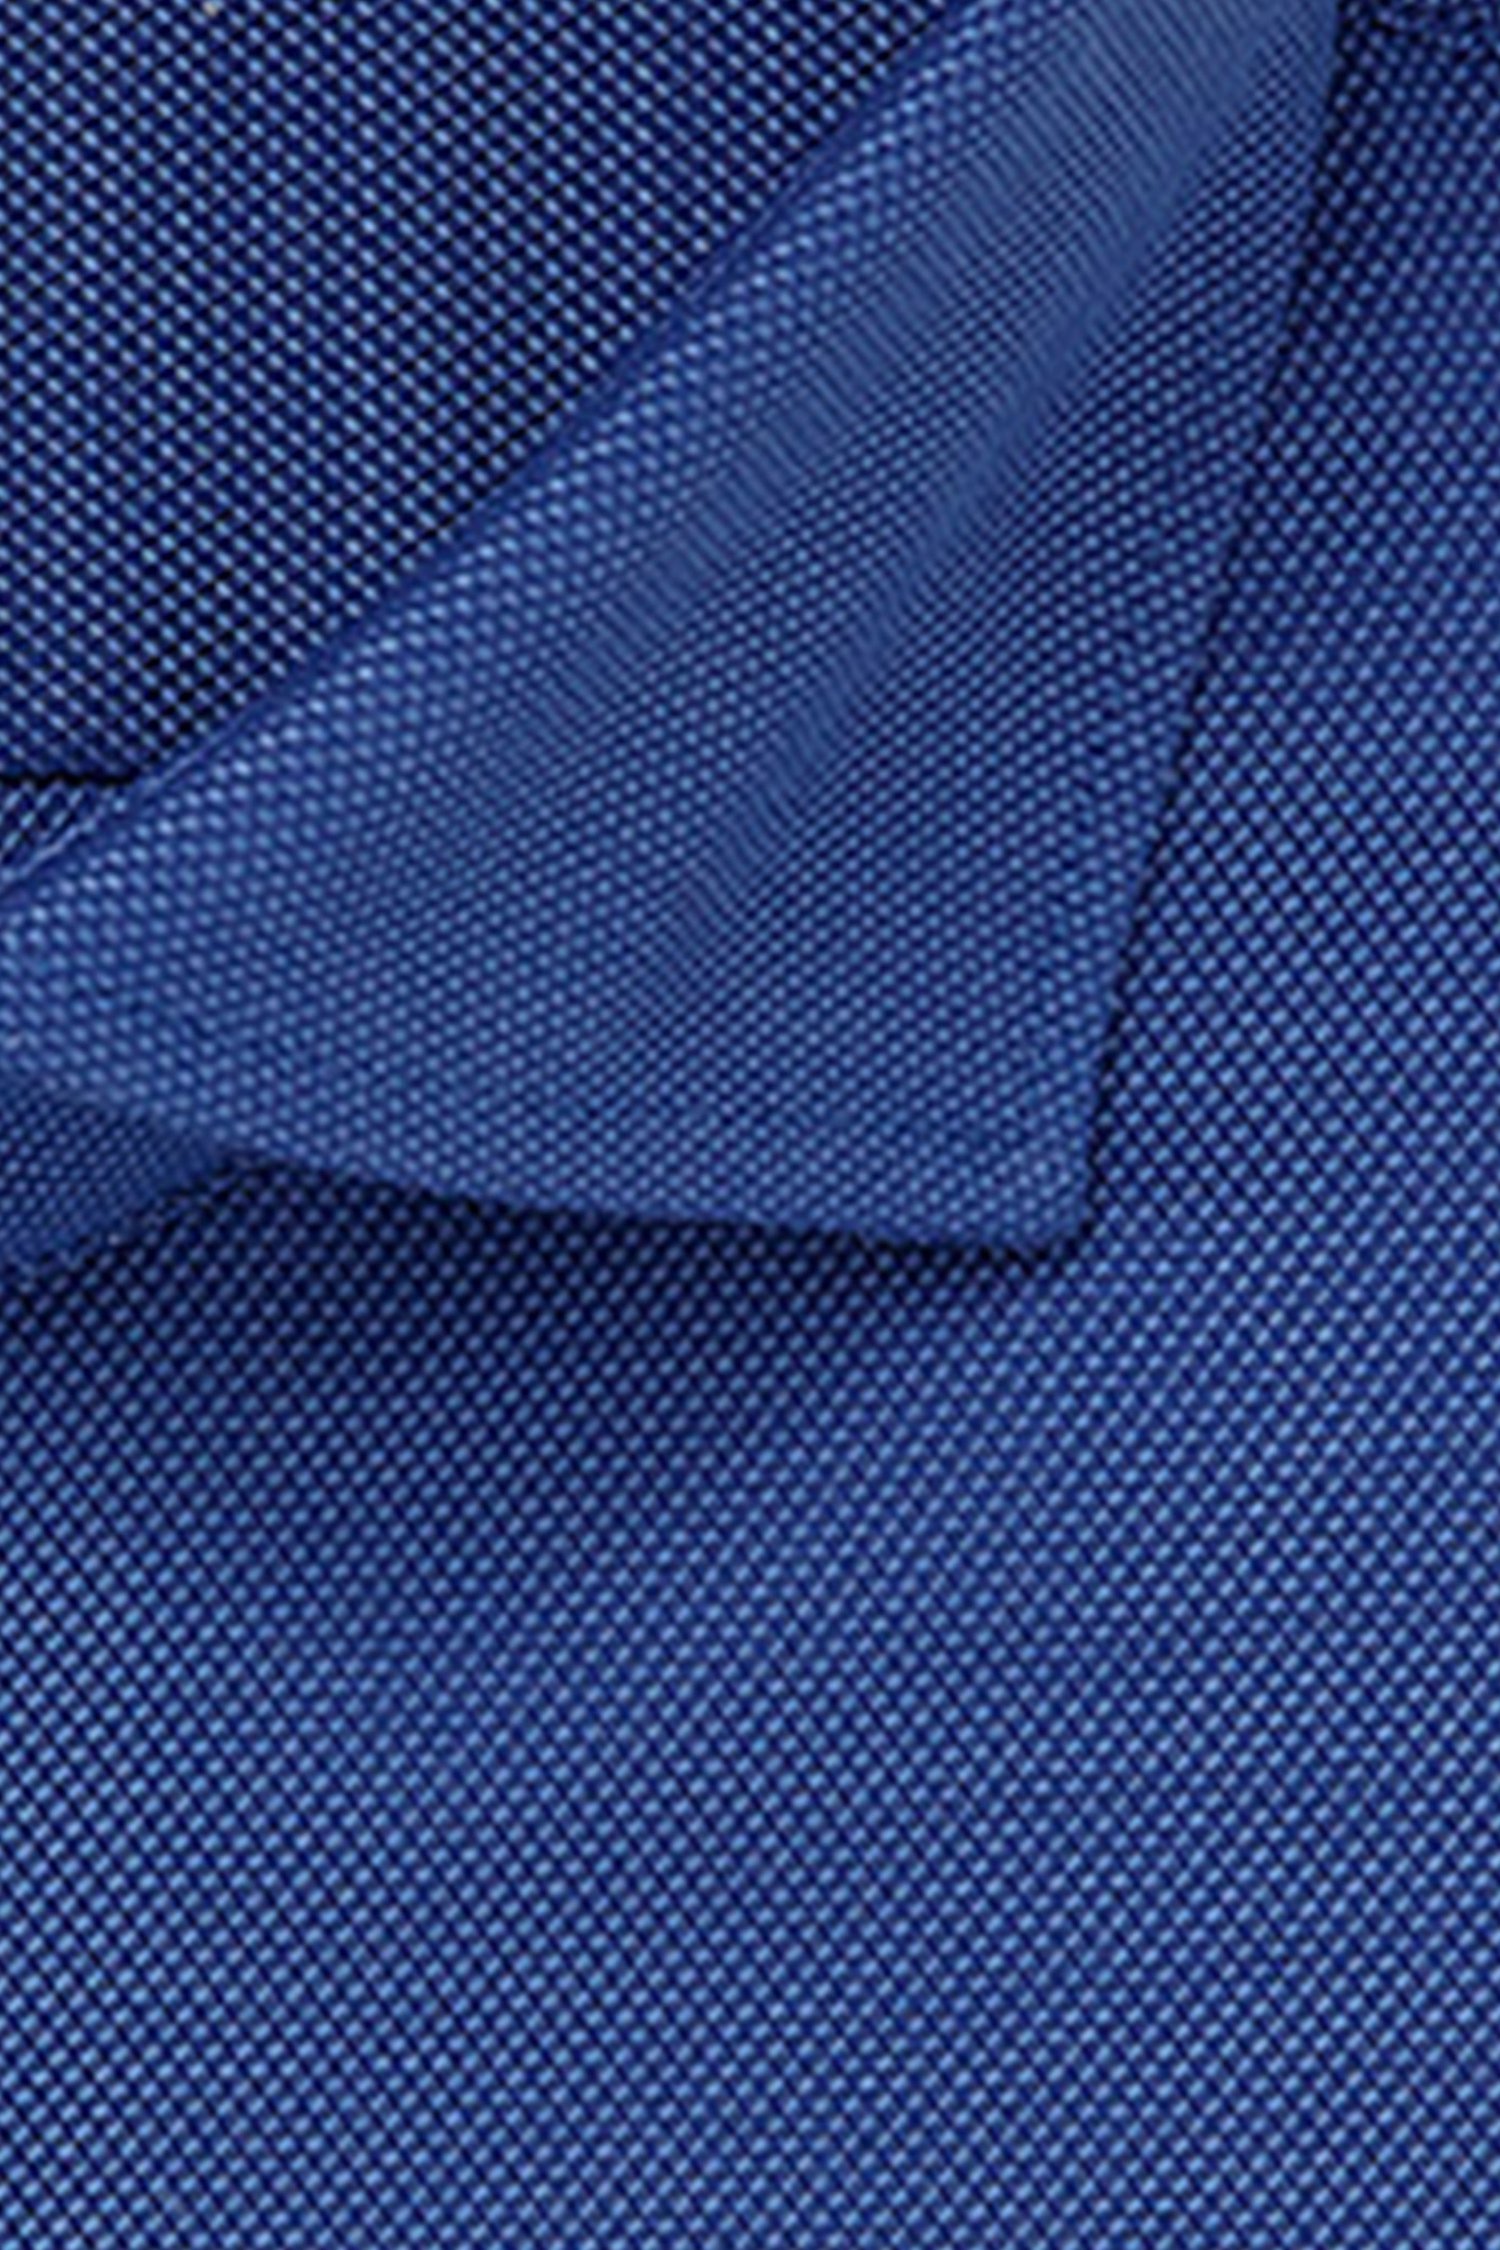 Blauw hemd met textuur - Slim fit van Michaelis voor Heren